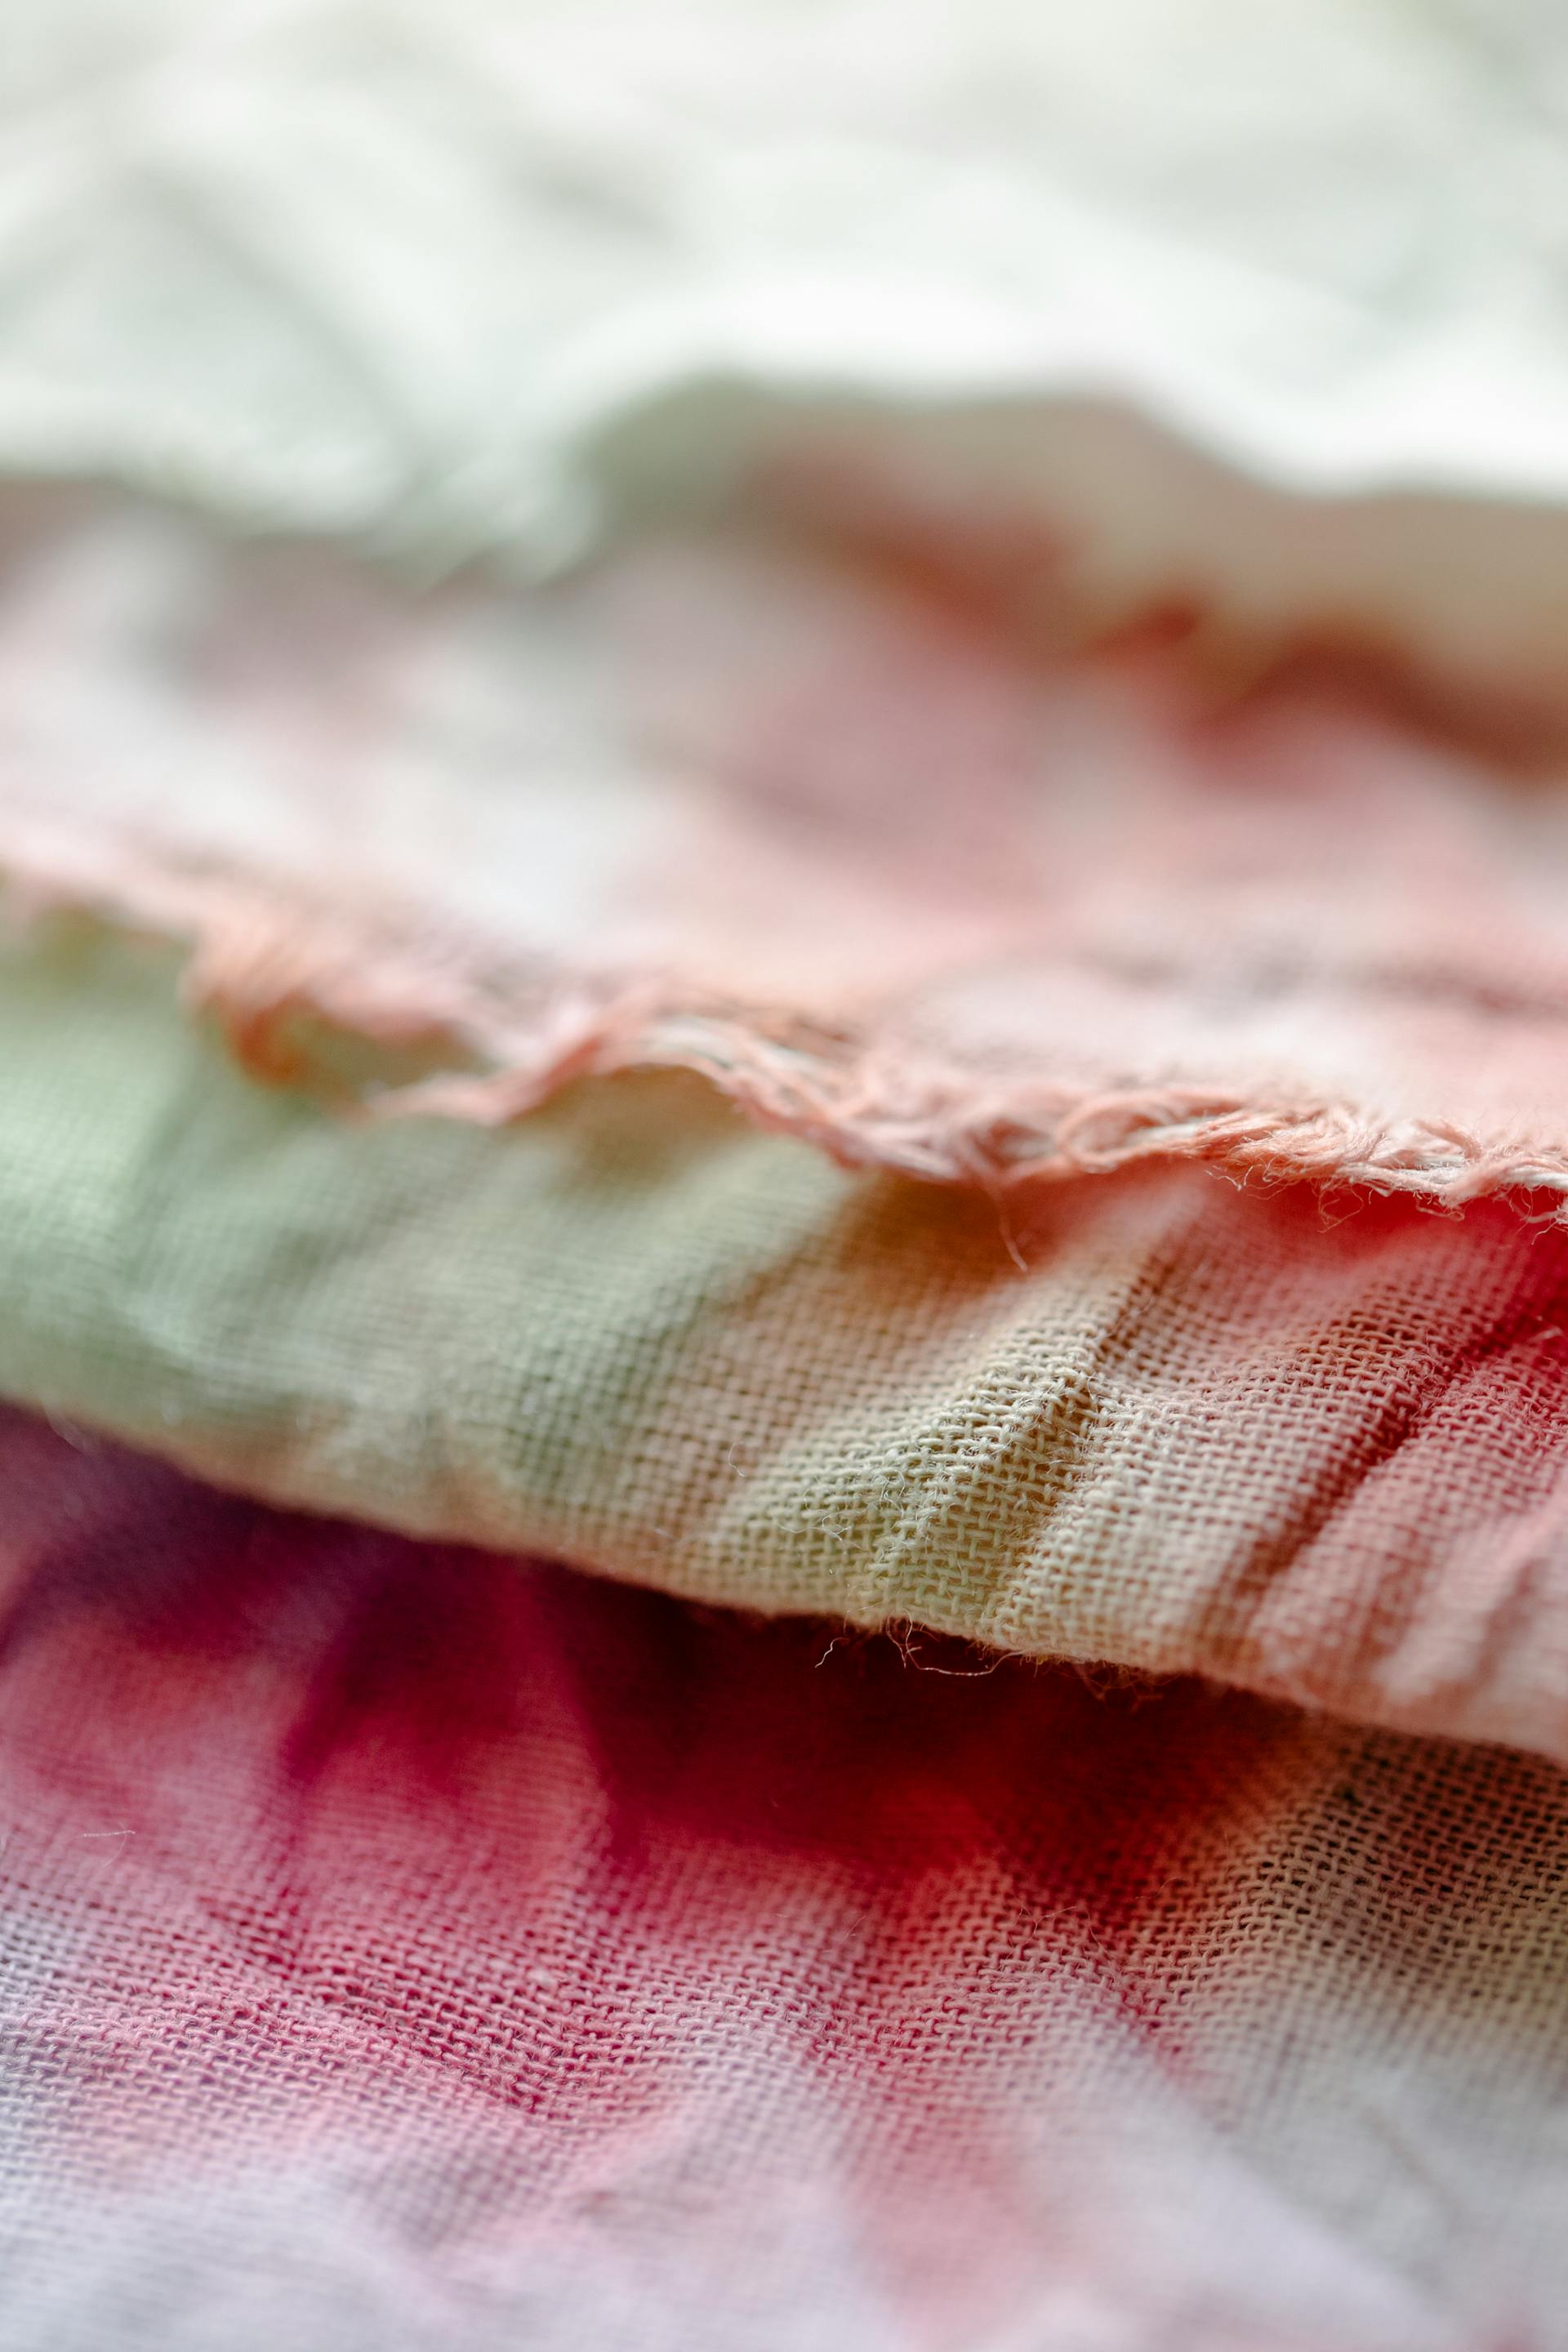 Tissu coloré | Source : Pexels